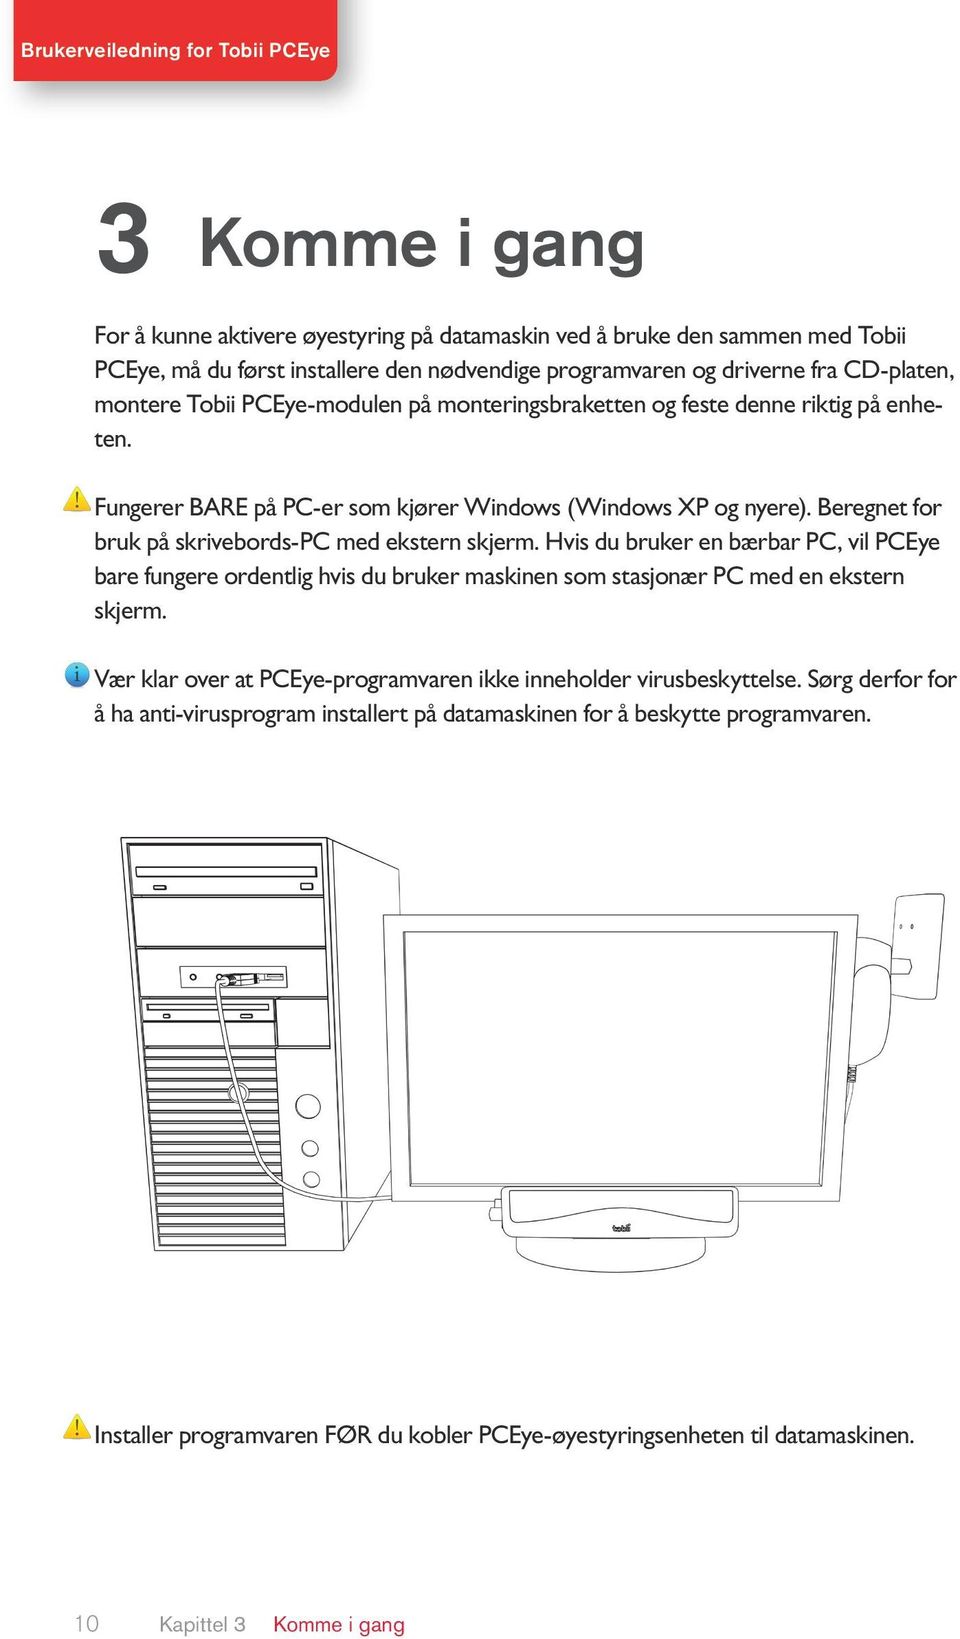 Hvis du bruker en bærbar PC, vil PCEye bare fungere ordentlig hvis du bruker maskinen som stasjonær PC med en ekstern skjerm. Vær klar over at PCEye-programvaren ikke inneholder virusbeskyttelse.